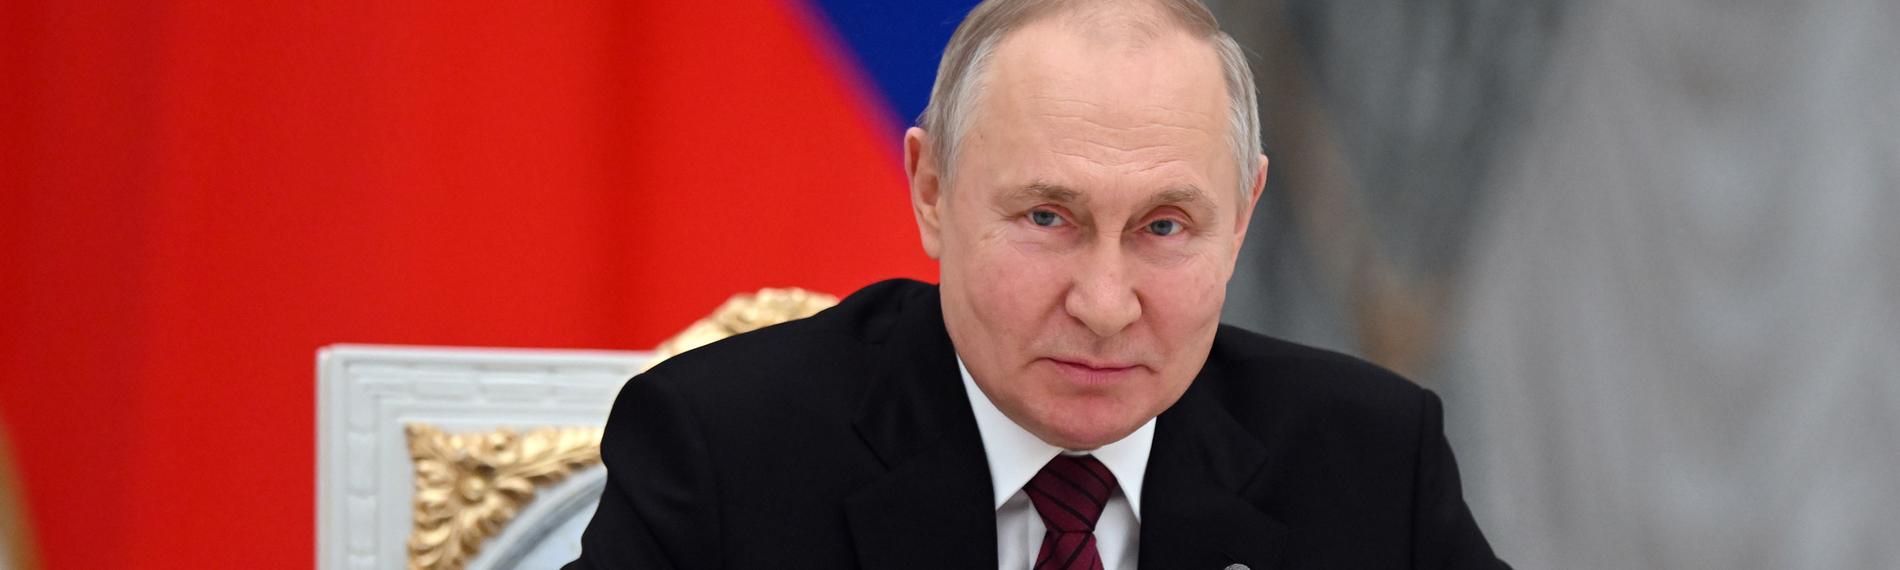 Der russische Präsident Wladimir Putin während einer Veranstaltung im Kreml.